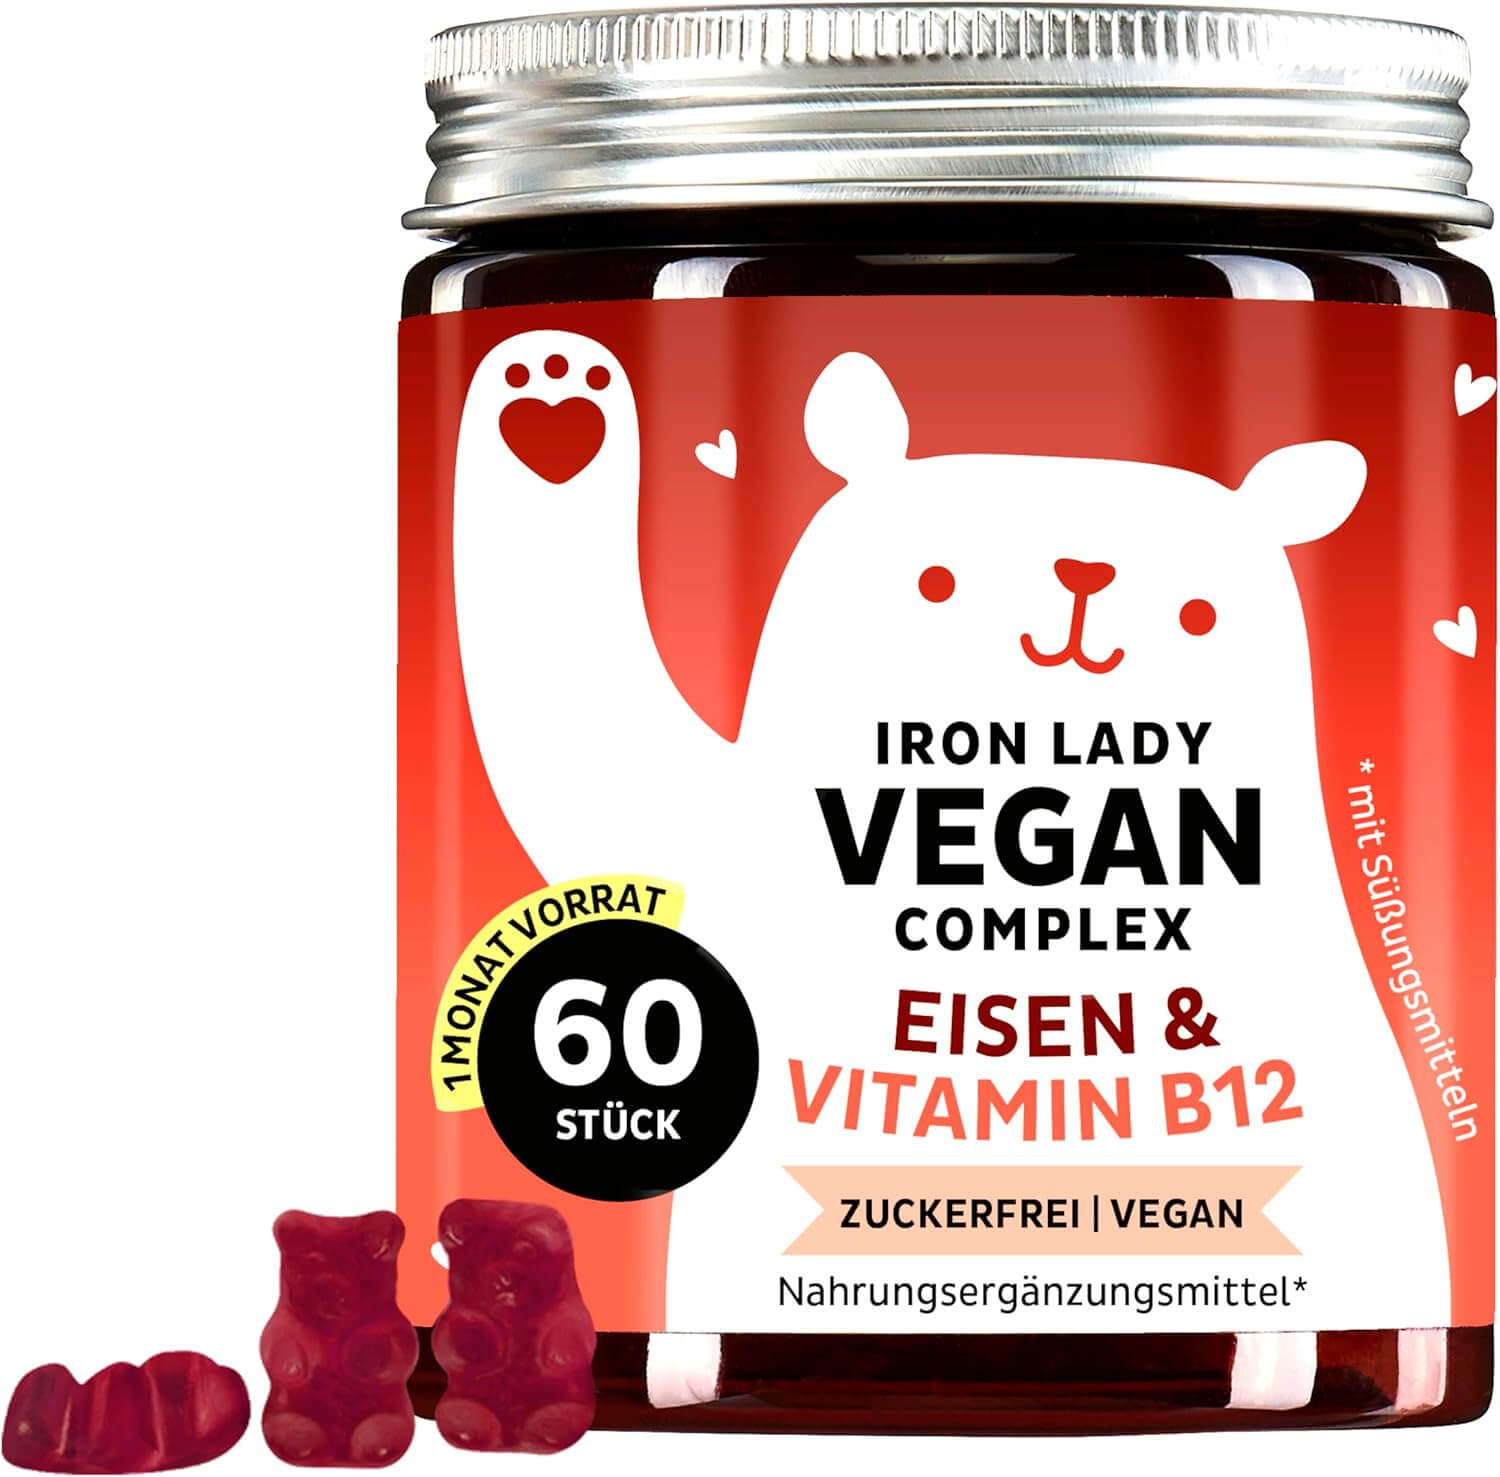 Bears with Benefits Iron Lady Vegan Complex | 60 Stück | Eisen und Vitamin B12 | Zuckerfrei | Vegane Gummibärchen